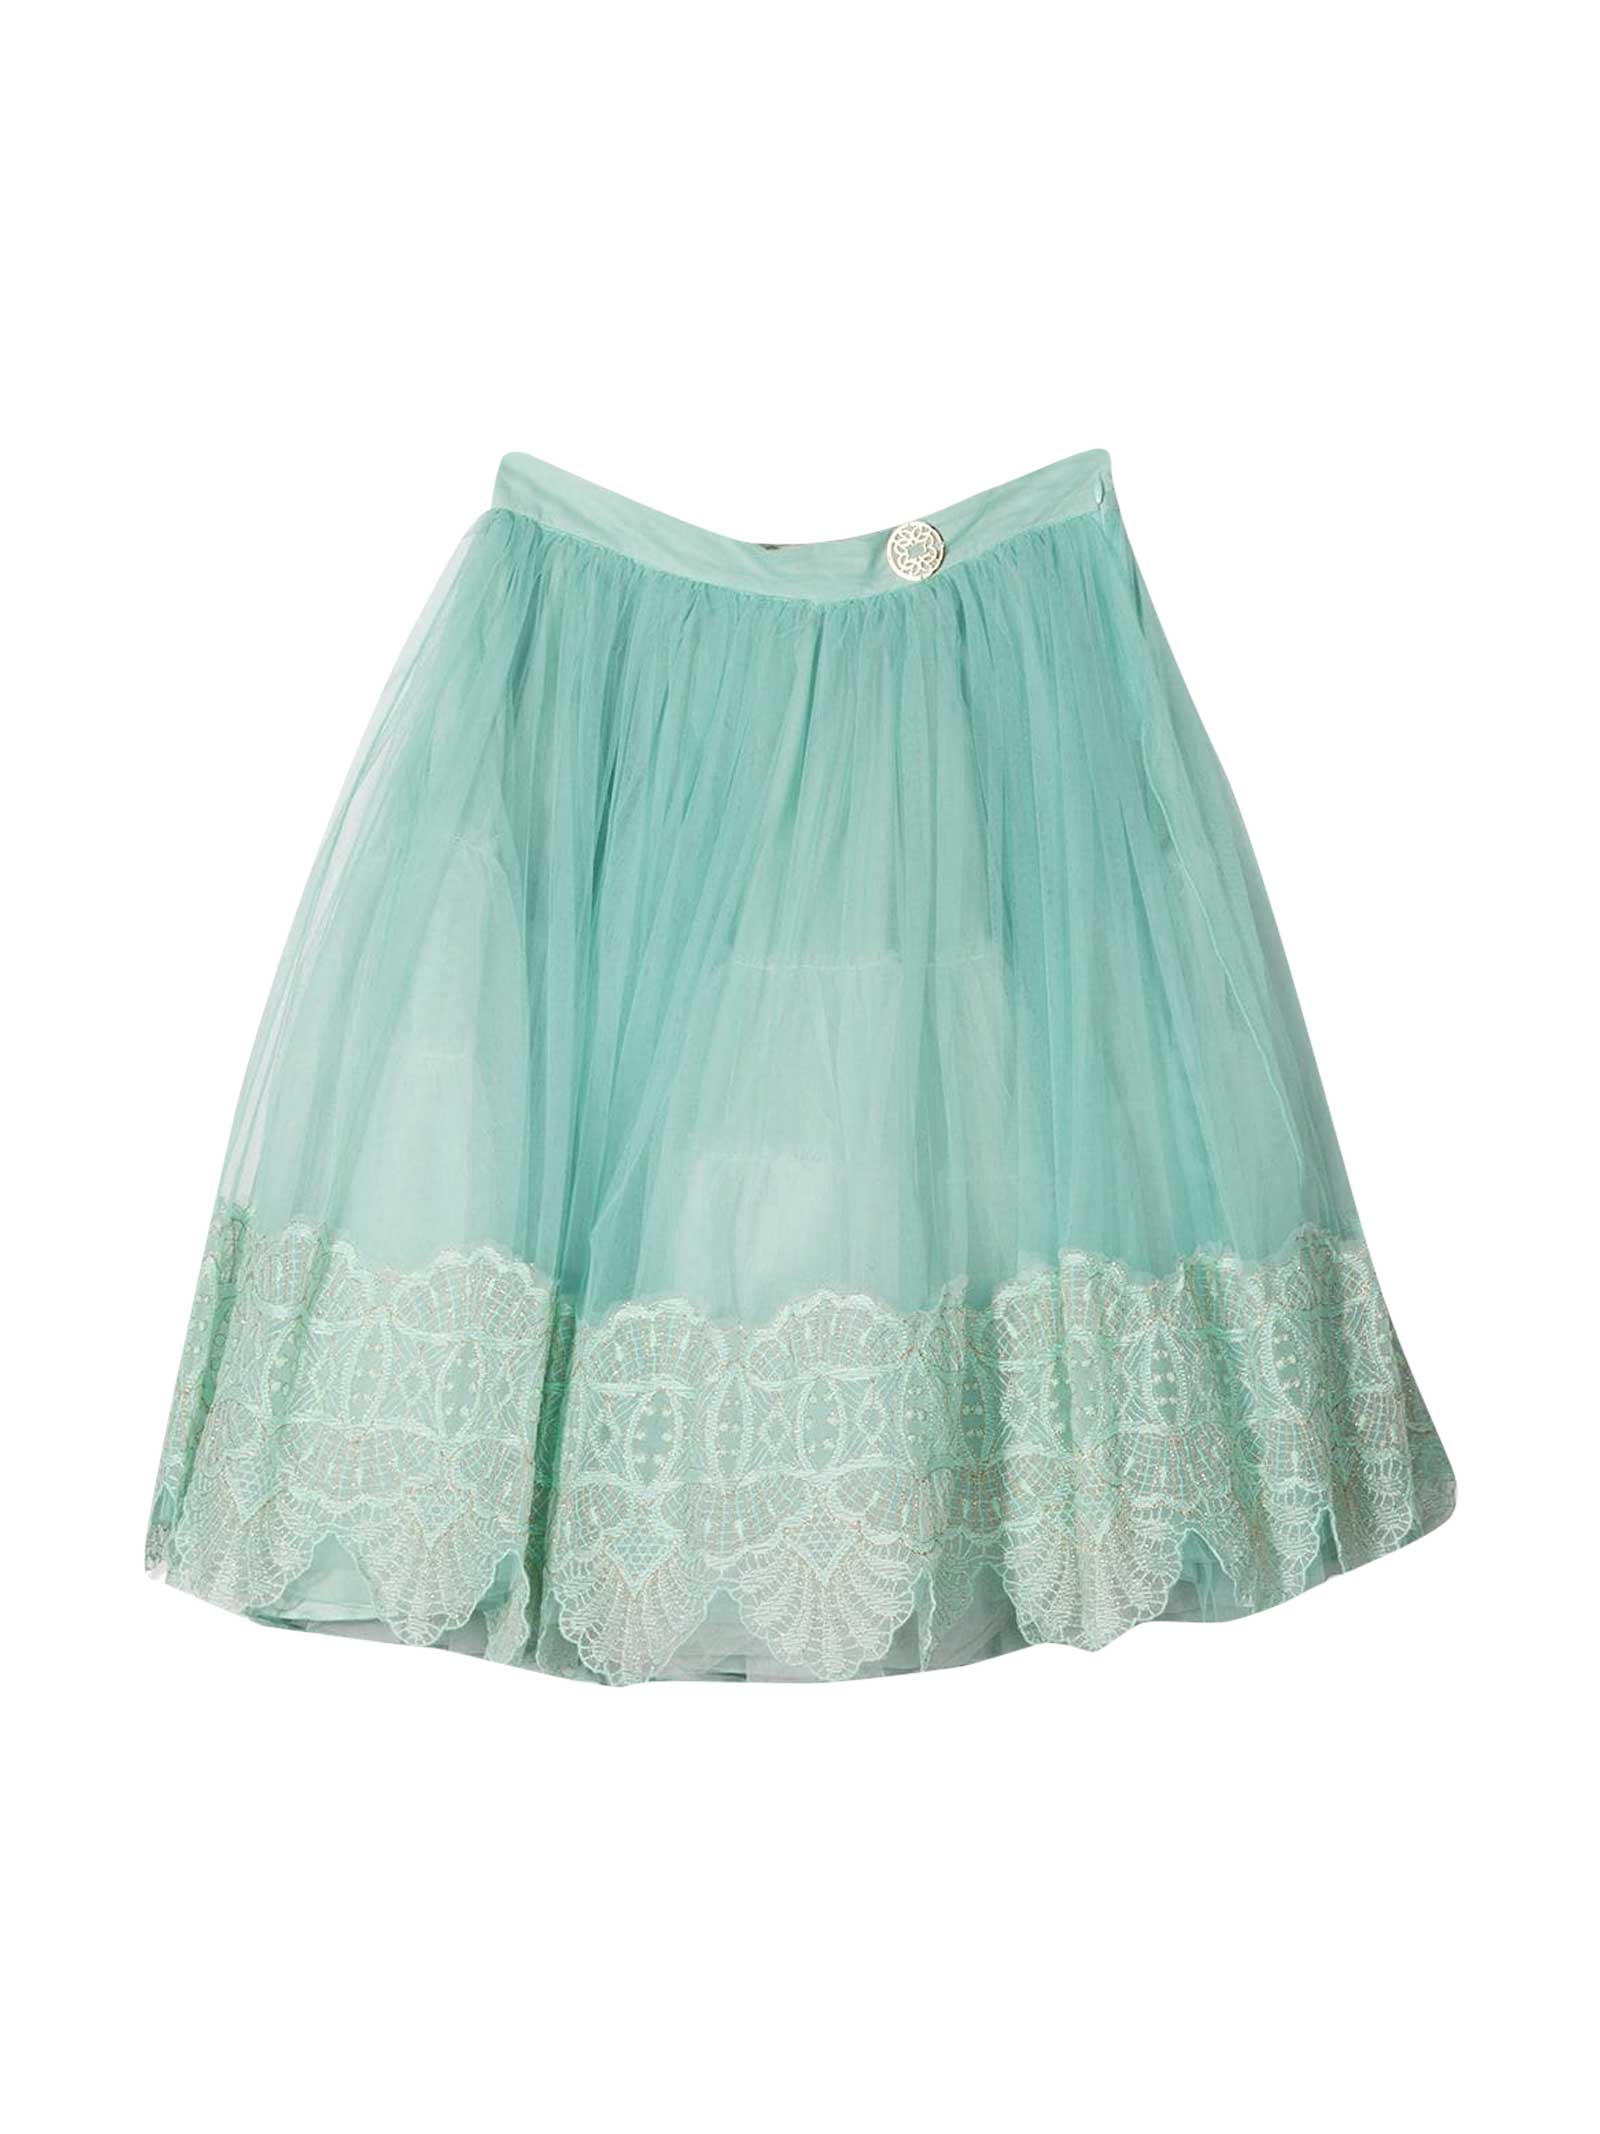 Elie Saab Teen Skirt With Application In Verde